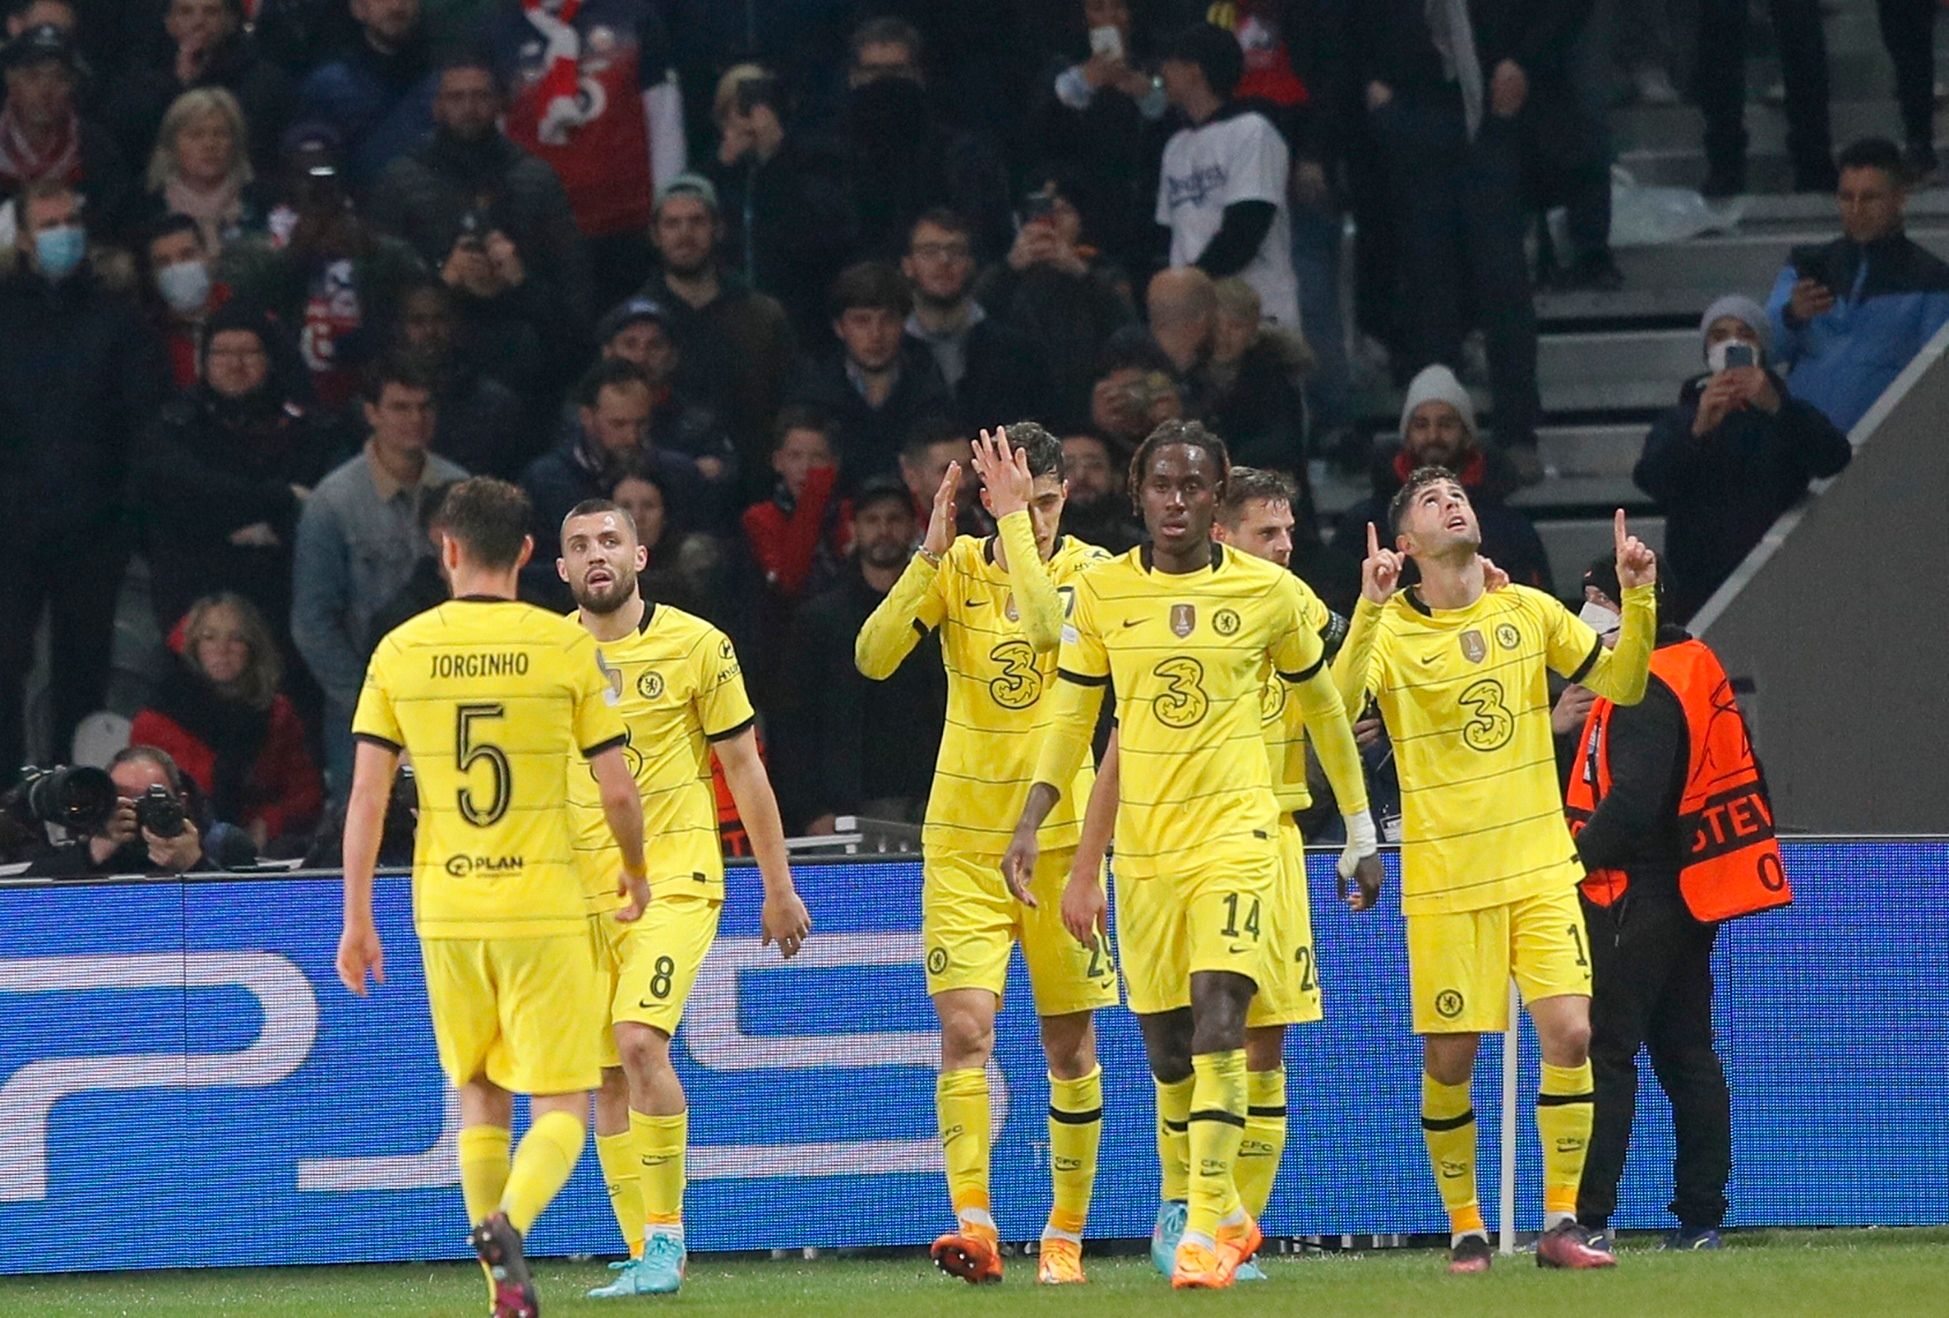 Chelsea, Villarreal win, Champions League quarterfinals set